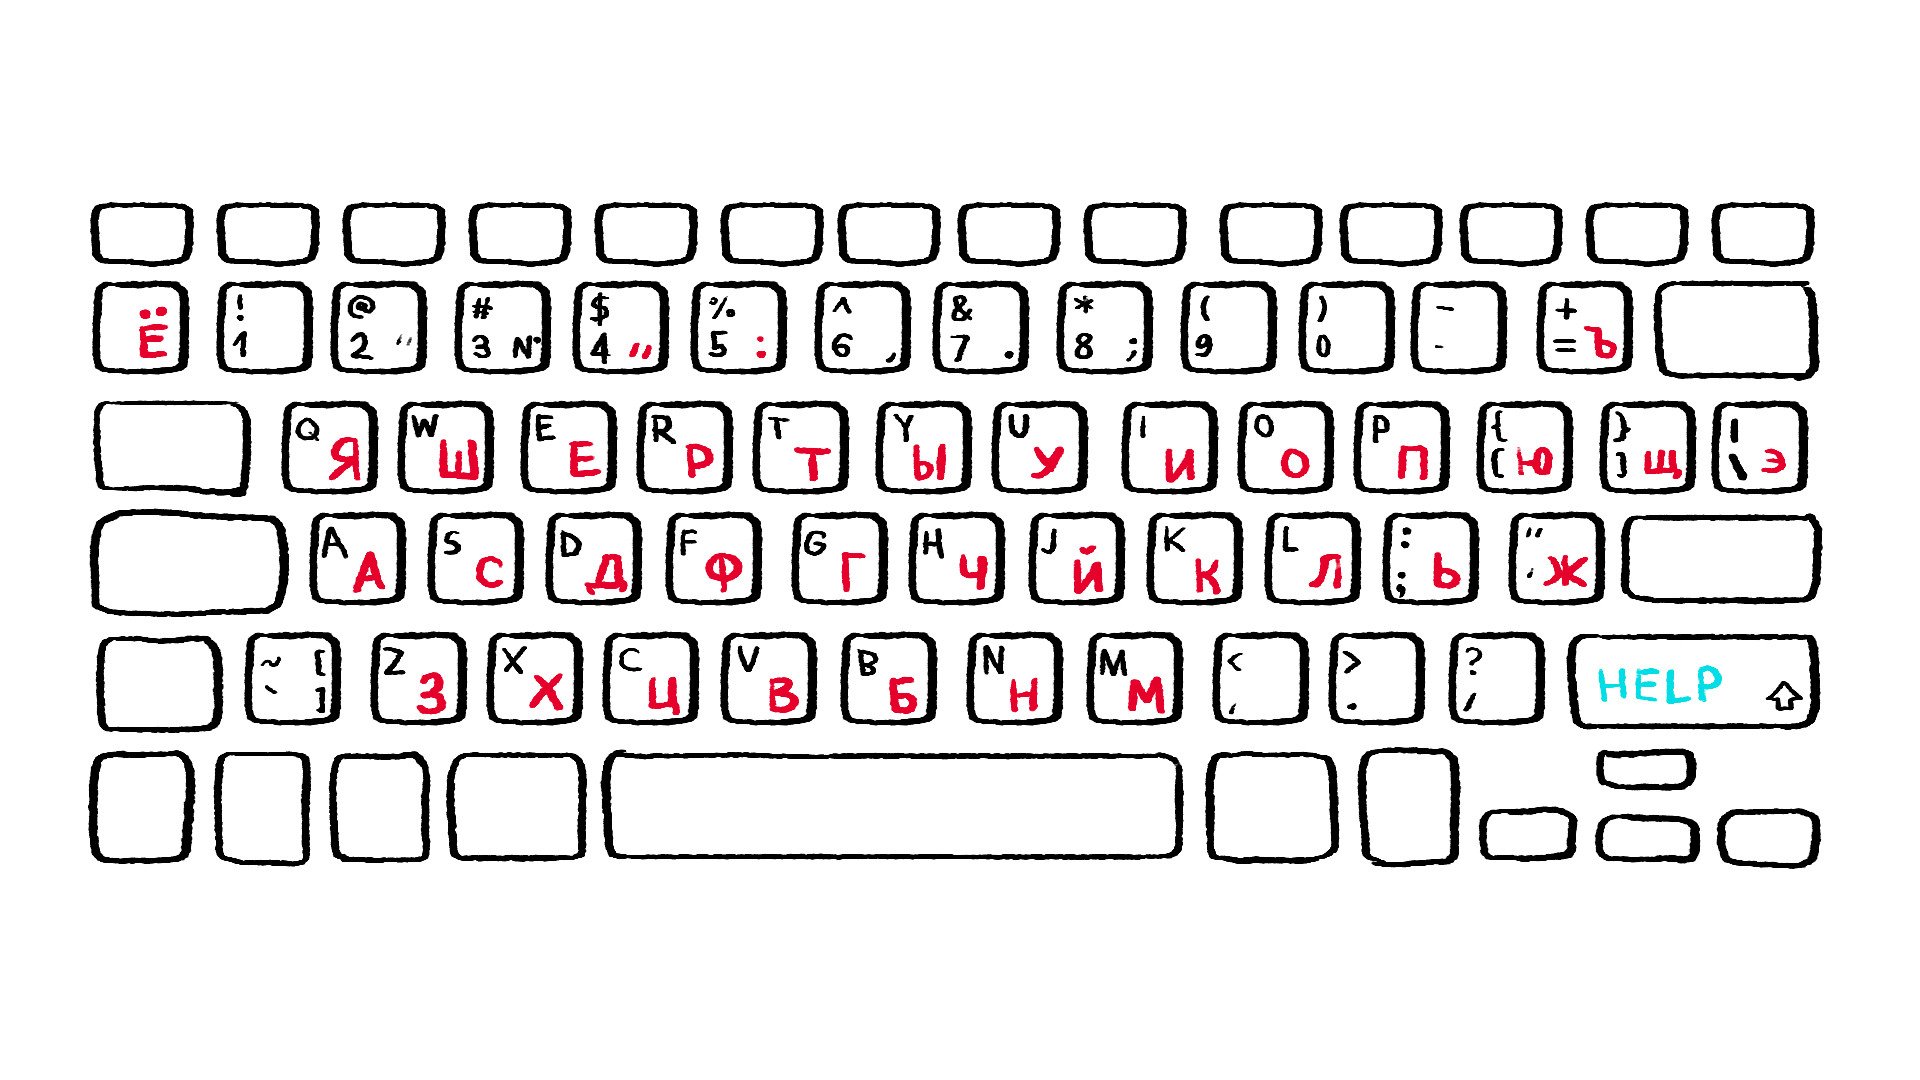 Знакомство С Клавиатурой Компьютера 3 Класс